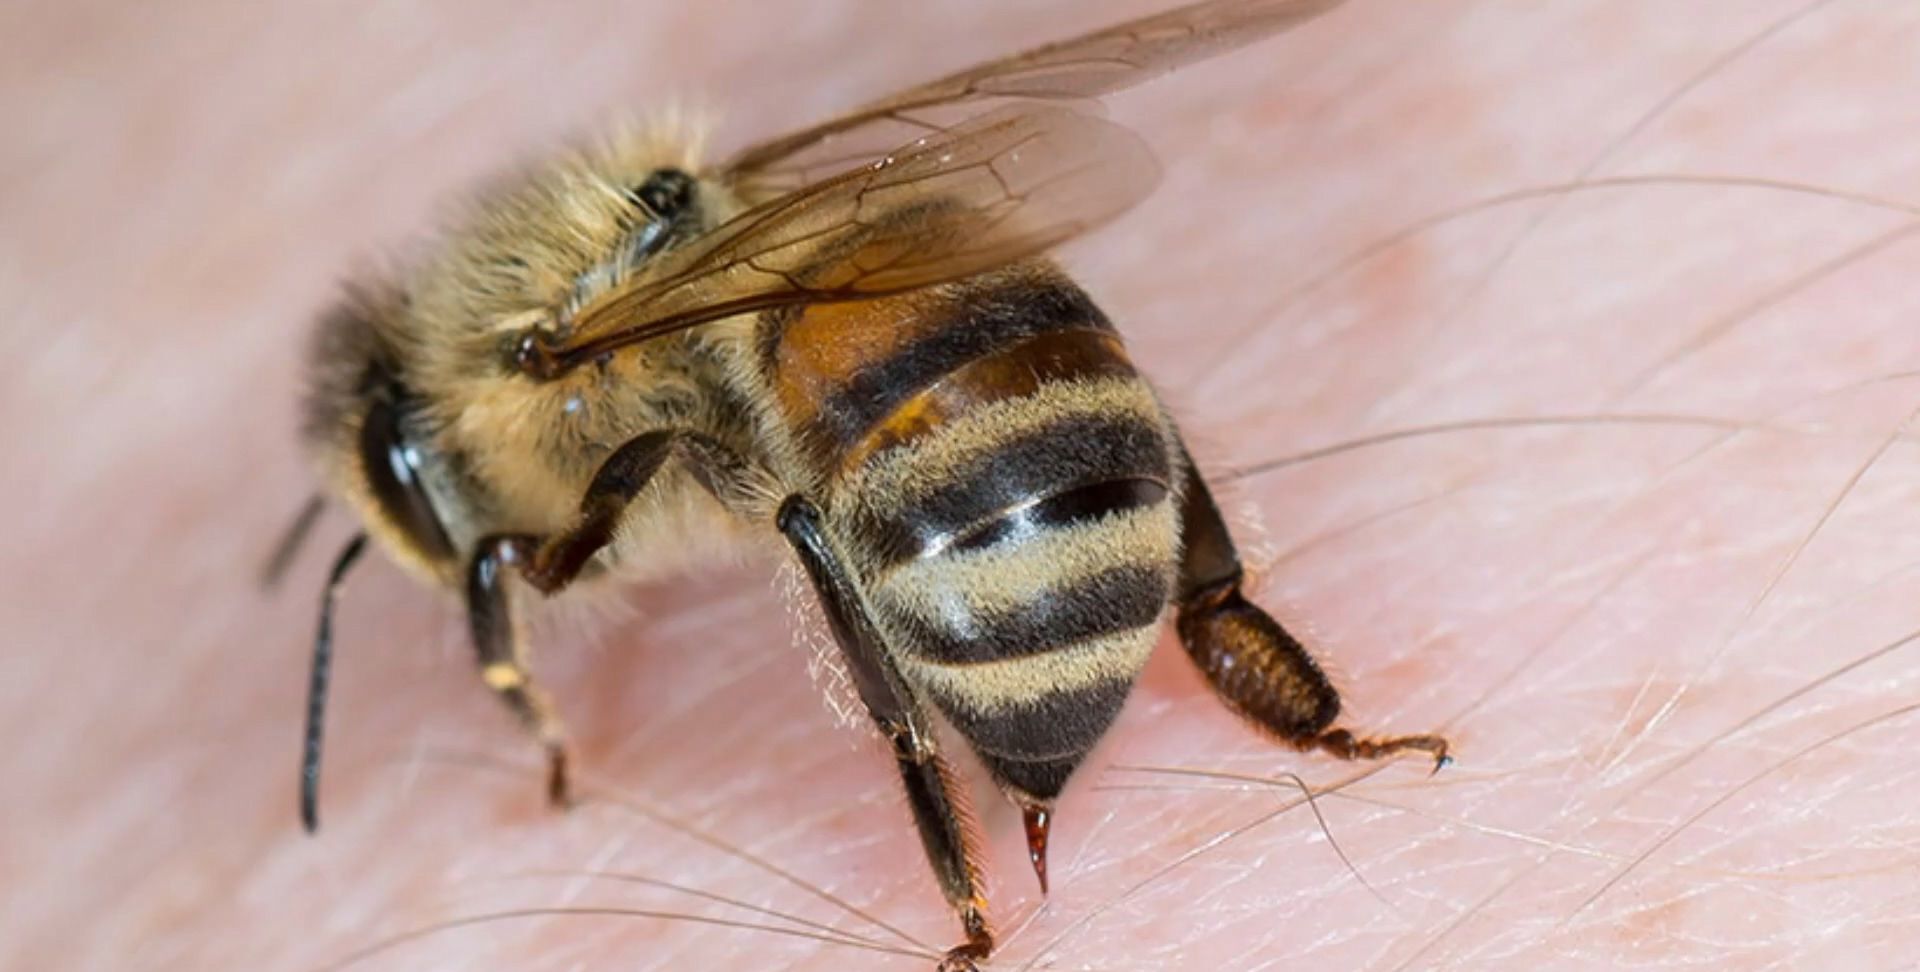 蜜蜂螫傷怎辦？一文睇被蜂螫傷處理方法、遇蜂應變、防蜂類襲擊安全指引 (15:42) - 20230512 - 熱點 - 即時新聞 - 明報新聞網